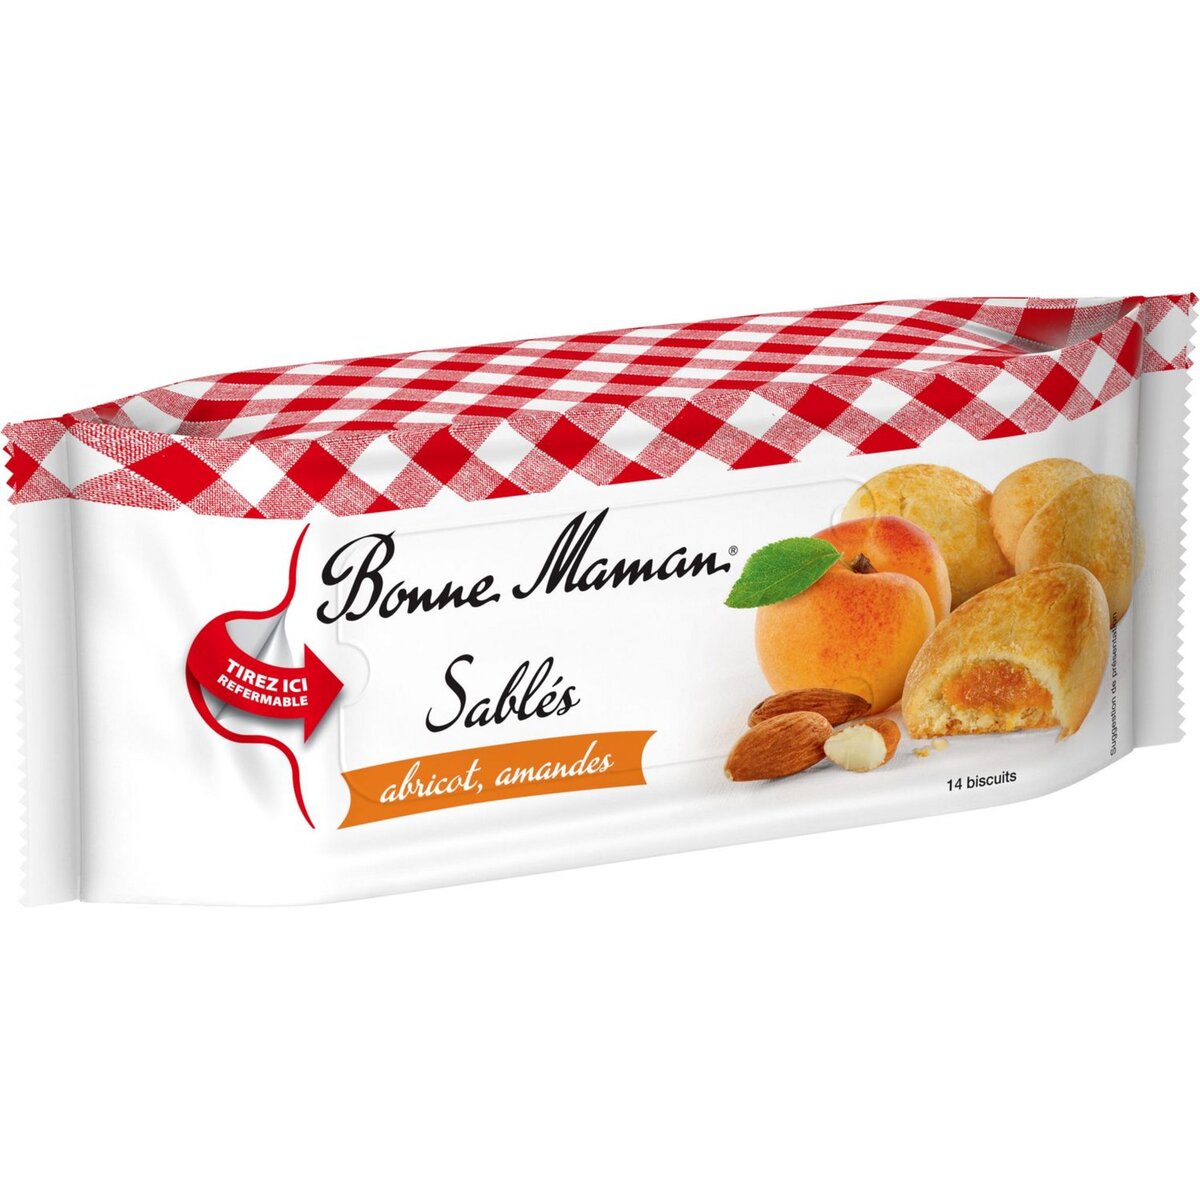 BONNE MAMAN Biscuits sablés abricot amandes 14 biscuits 150g